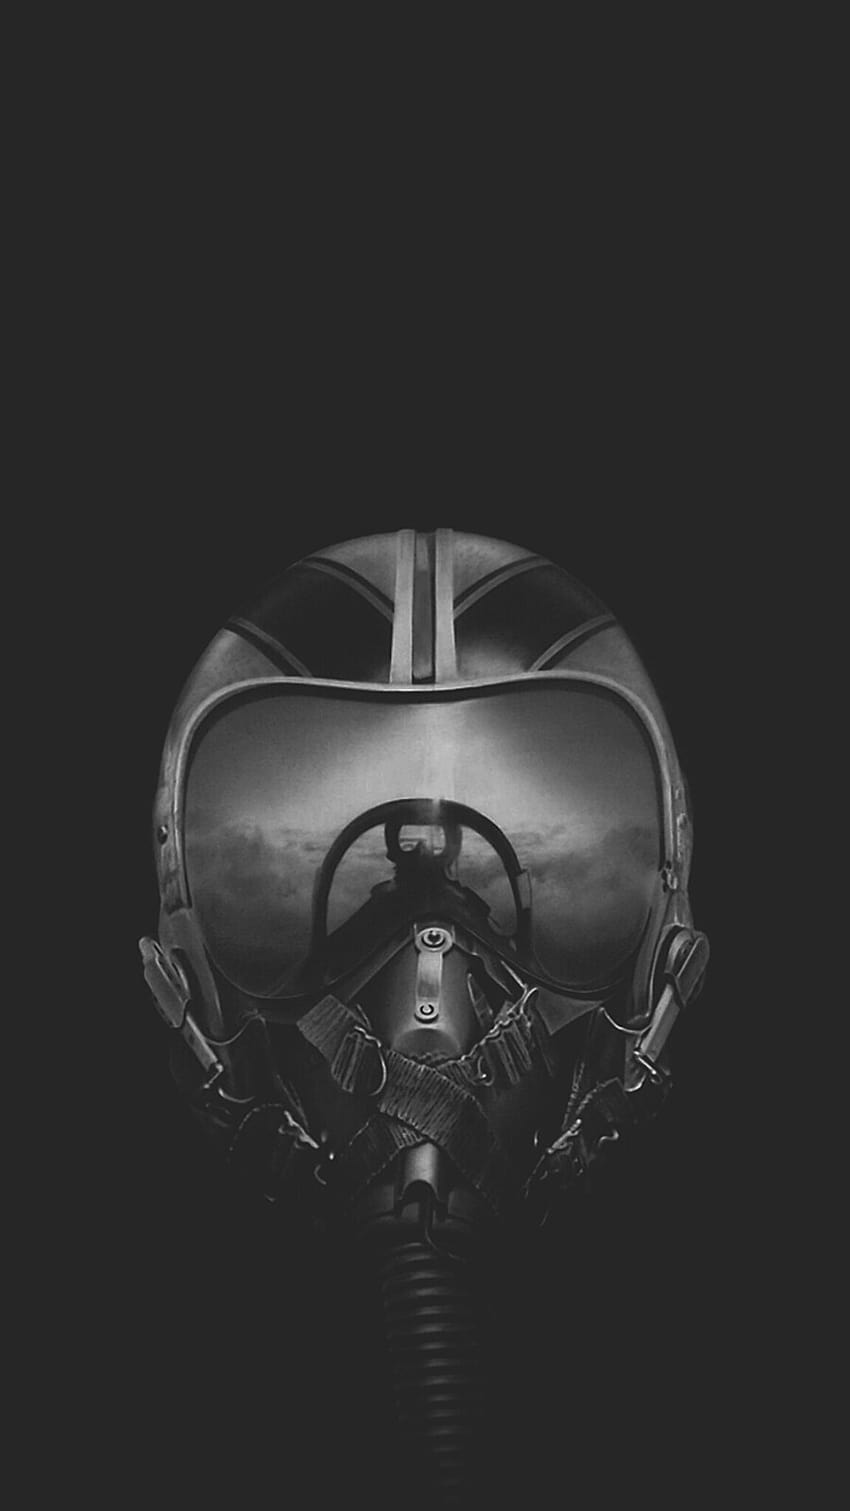  UNDERWRAPS Fighter Pilot Helmet - Stealth Fighter